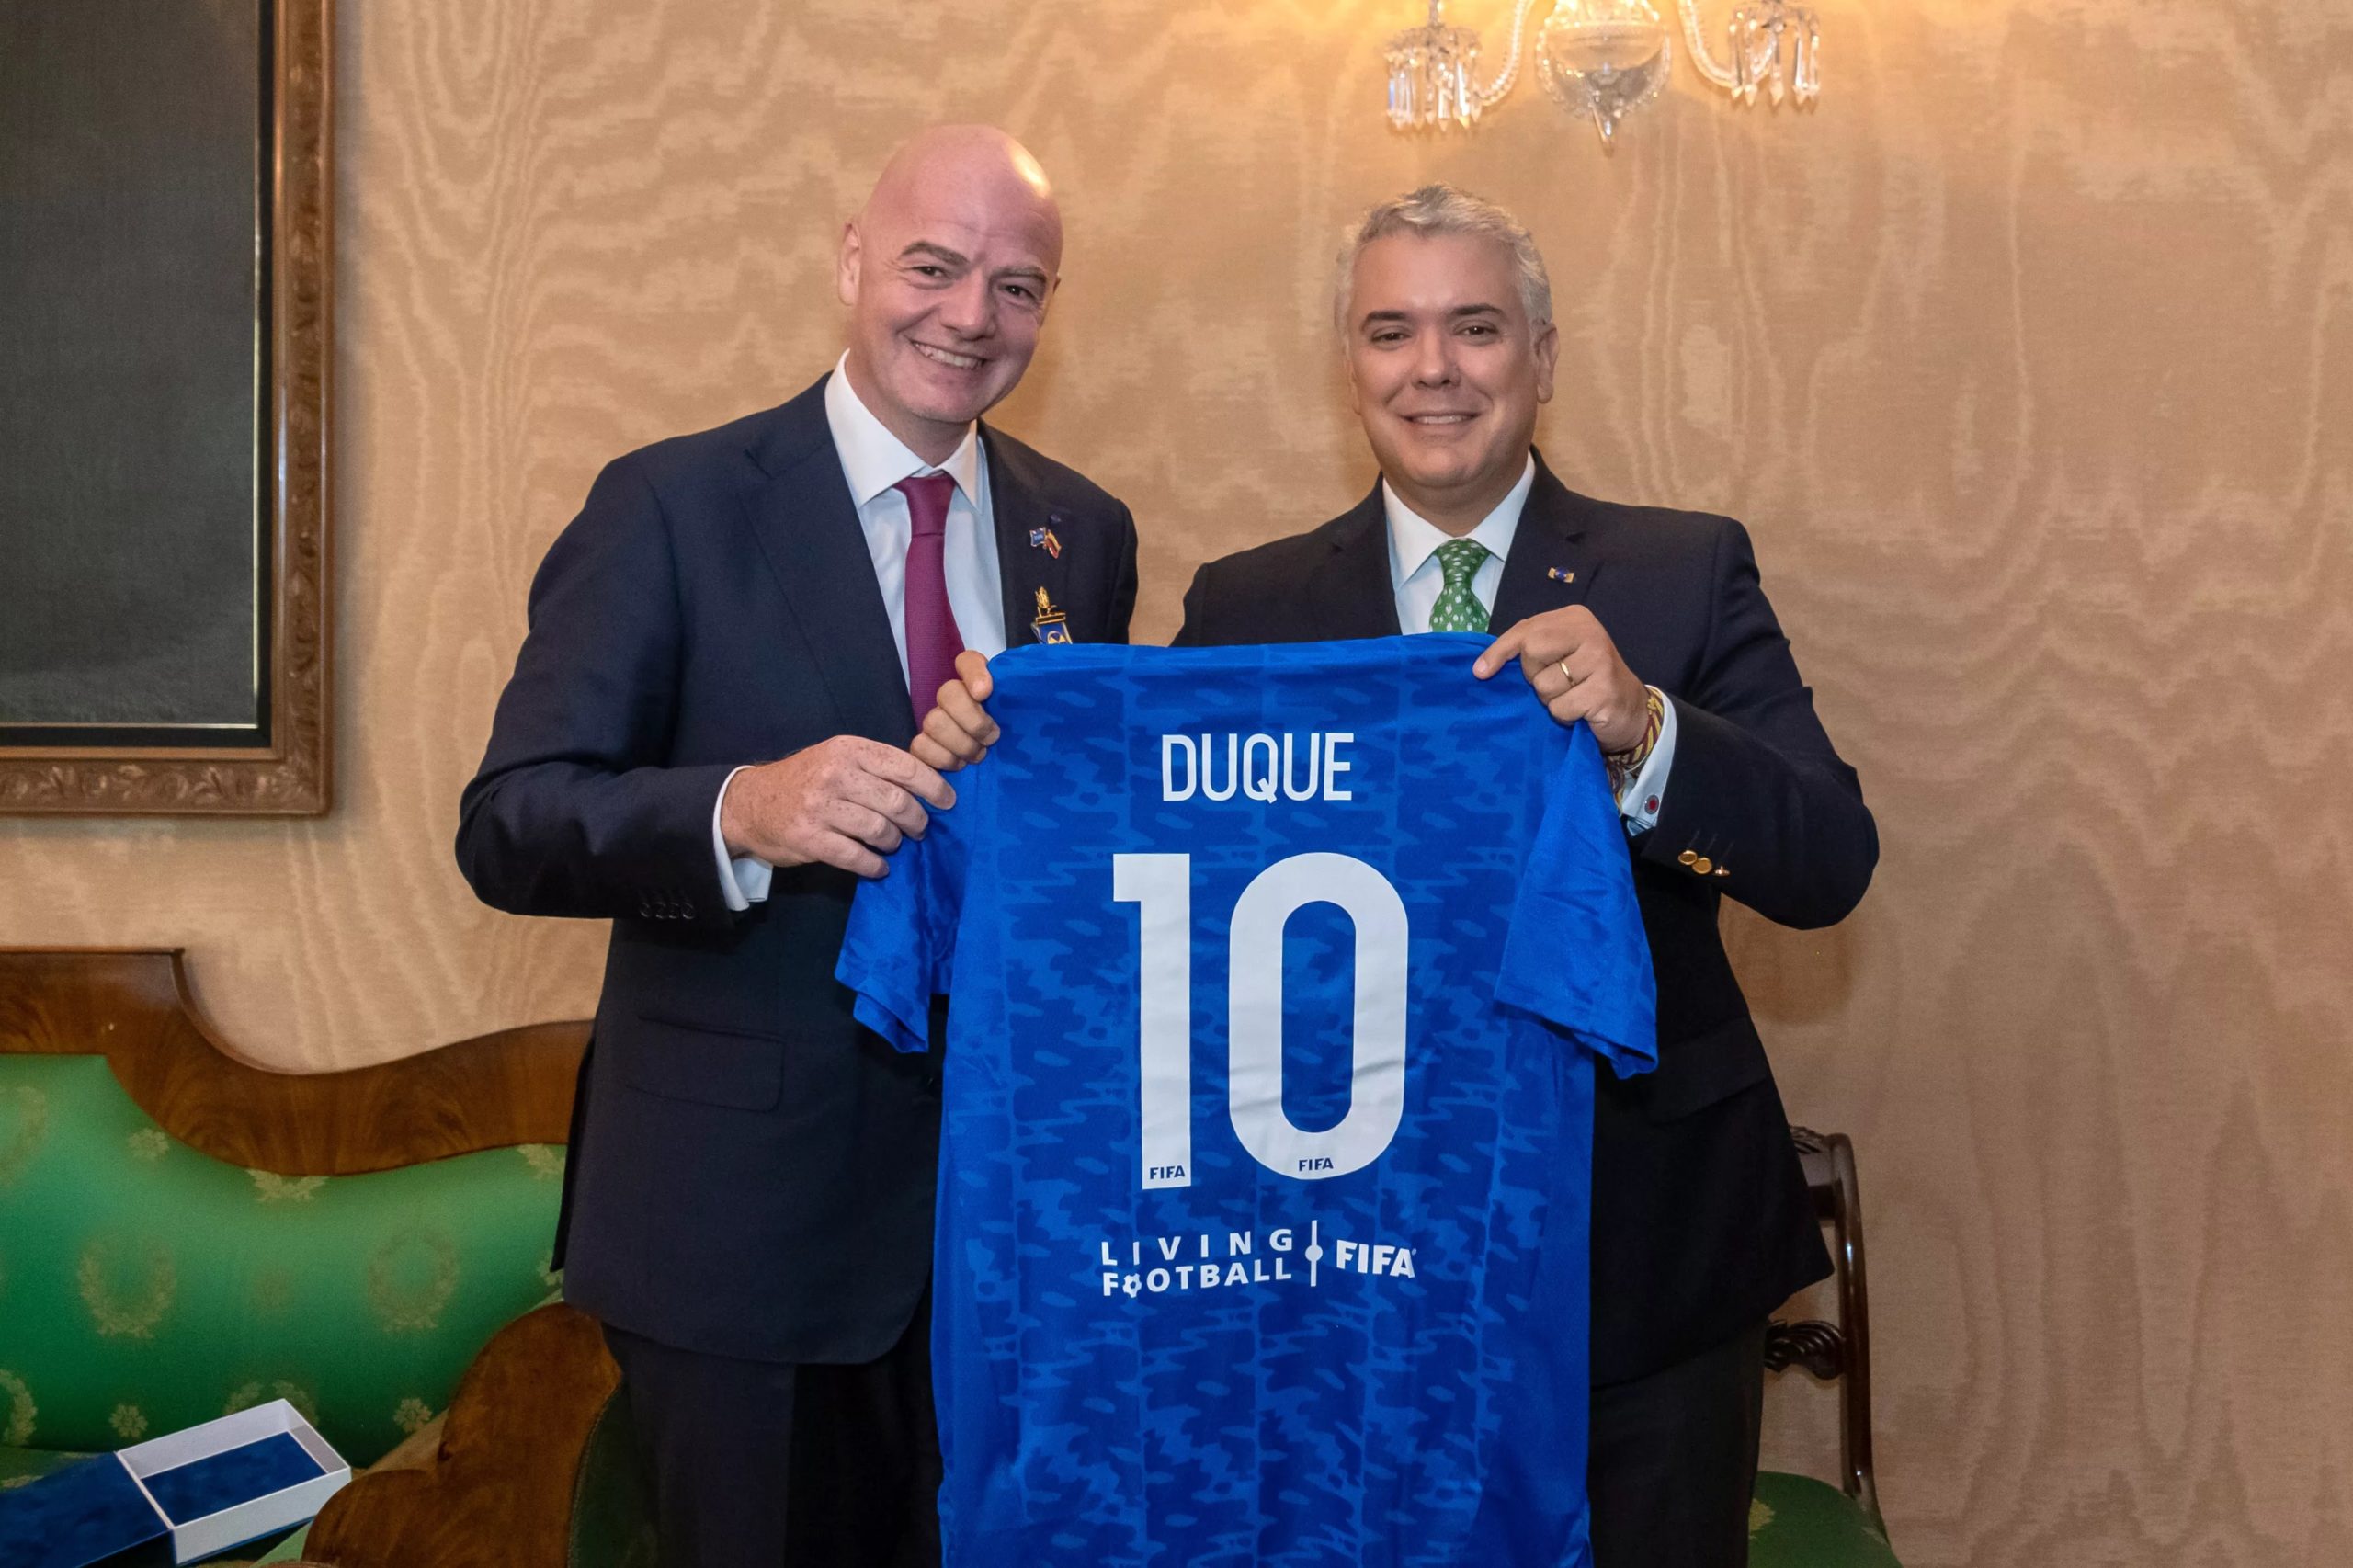 Expresidente Duque integrará la junta directiva de la Fundación FIFA - LA LENGUA CARIBE